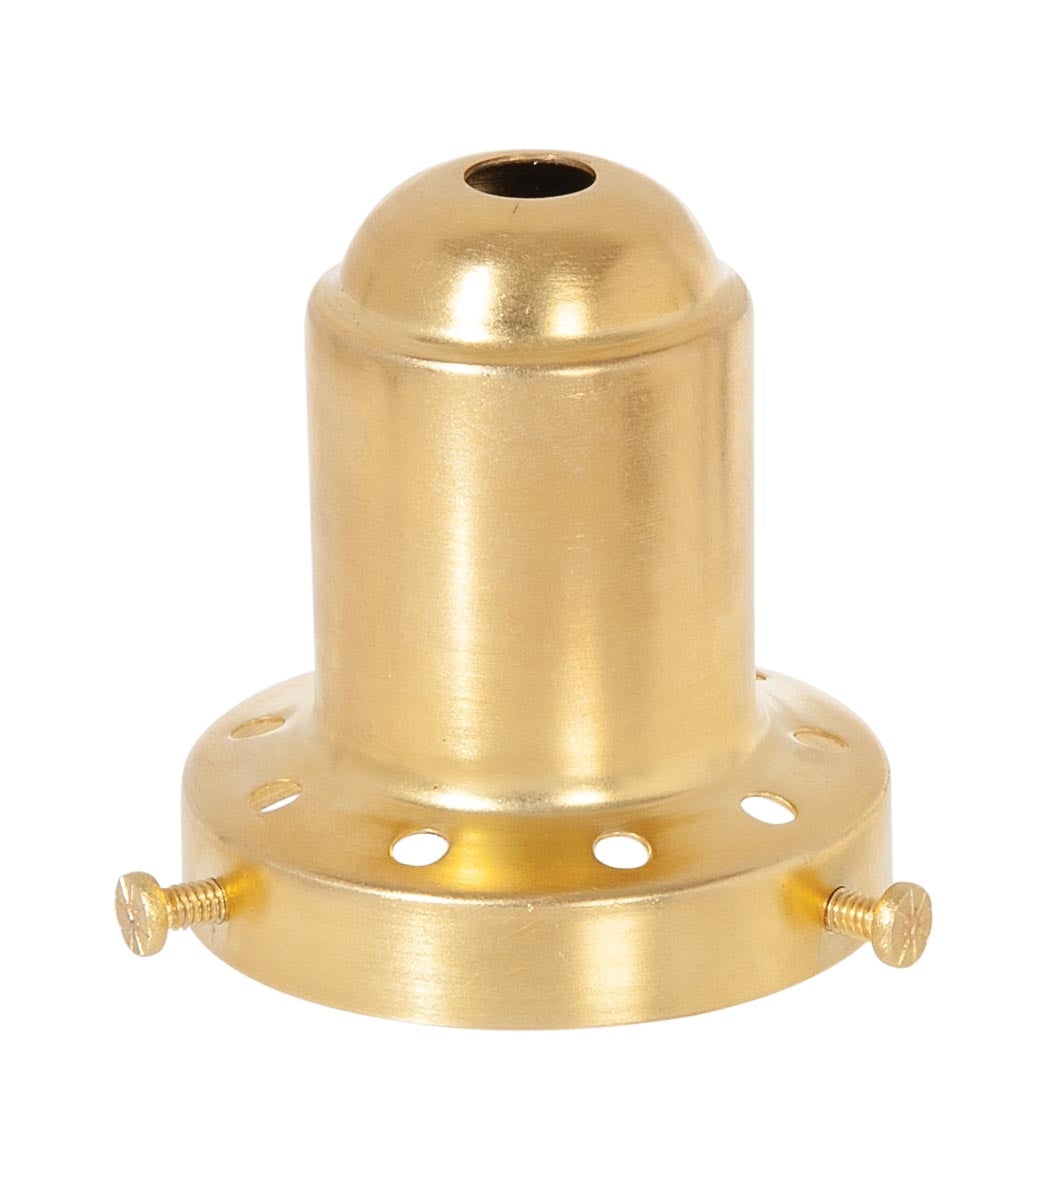 2-1/4 Inch Fitter Antique Brass Finish Spun Brass Lamp Shade